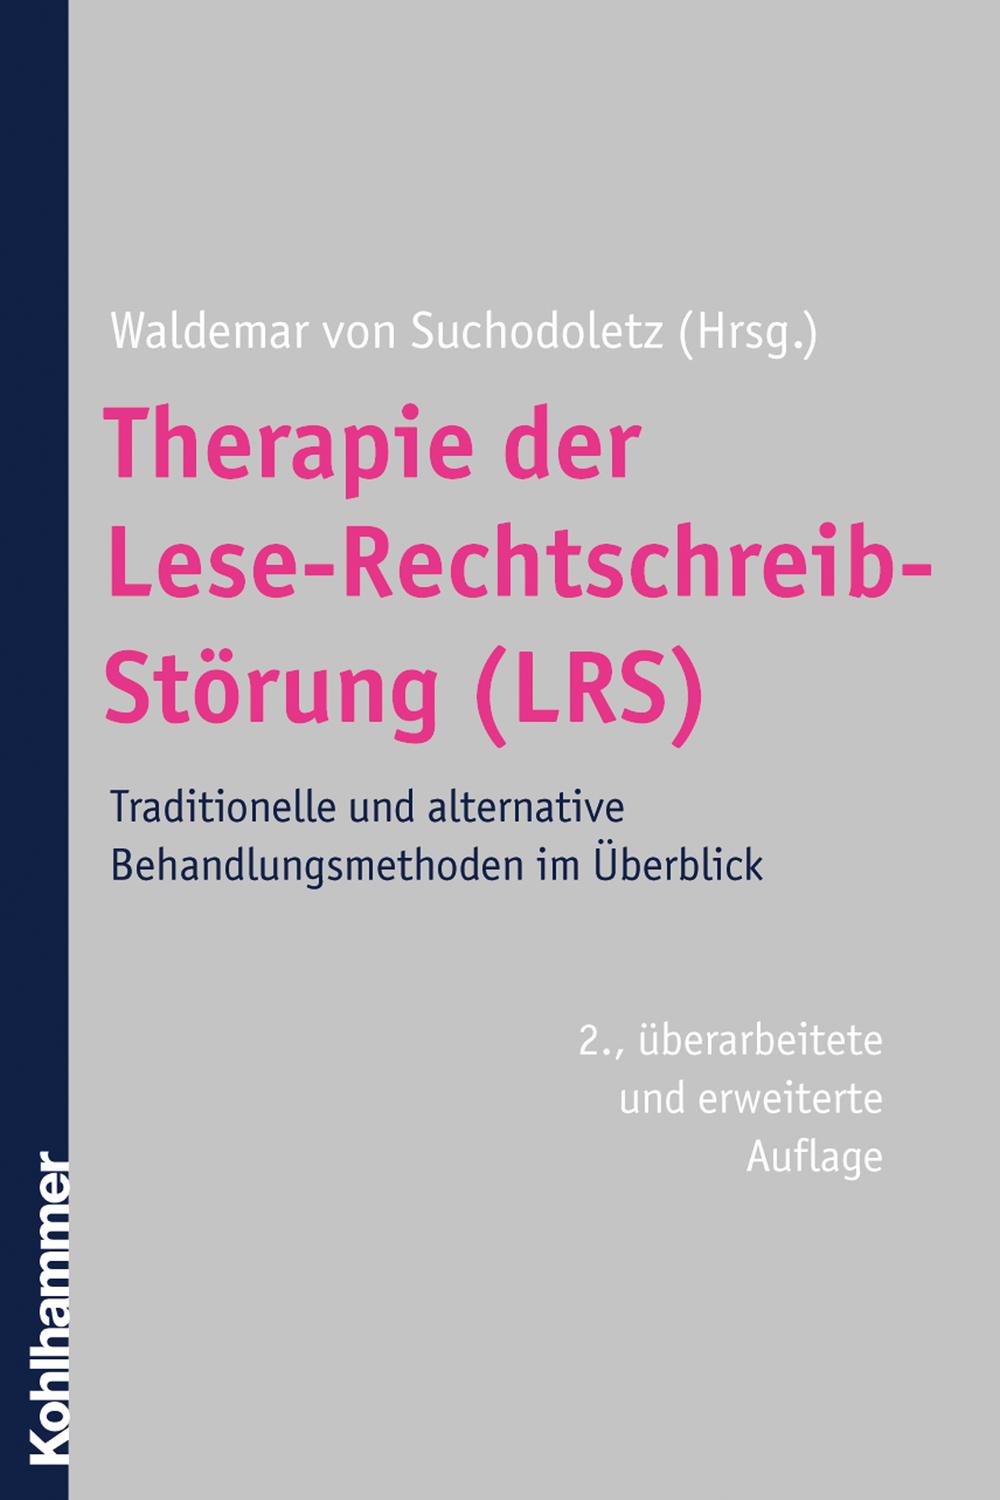 Therapie der Lese-Rechtschreib-Störung (LRS) - Waldemar von Suchodoletz